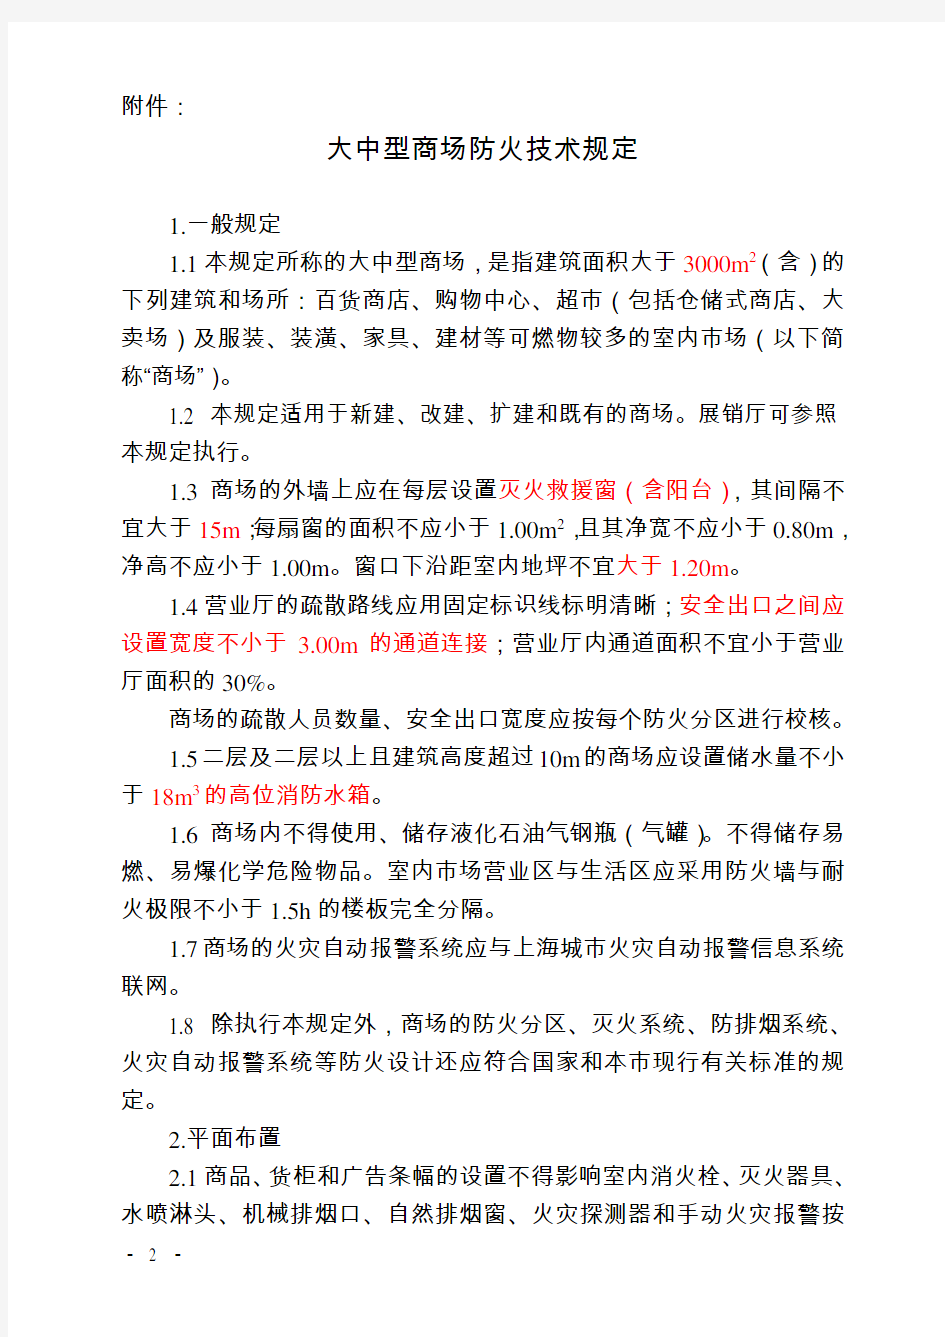 上海消防规范文件